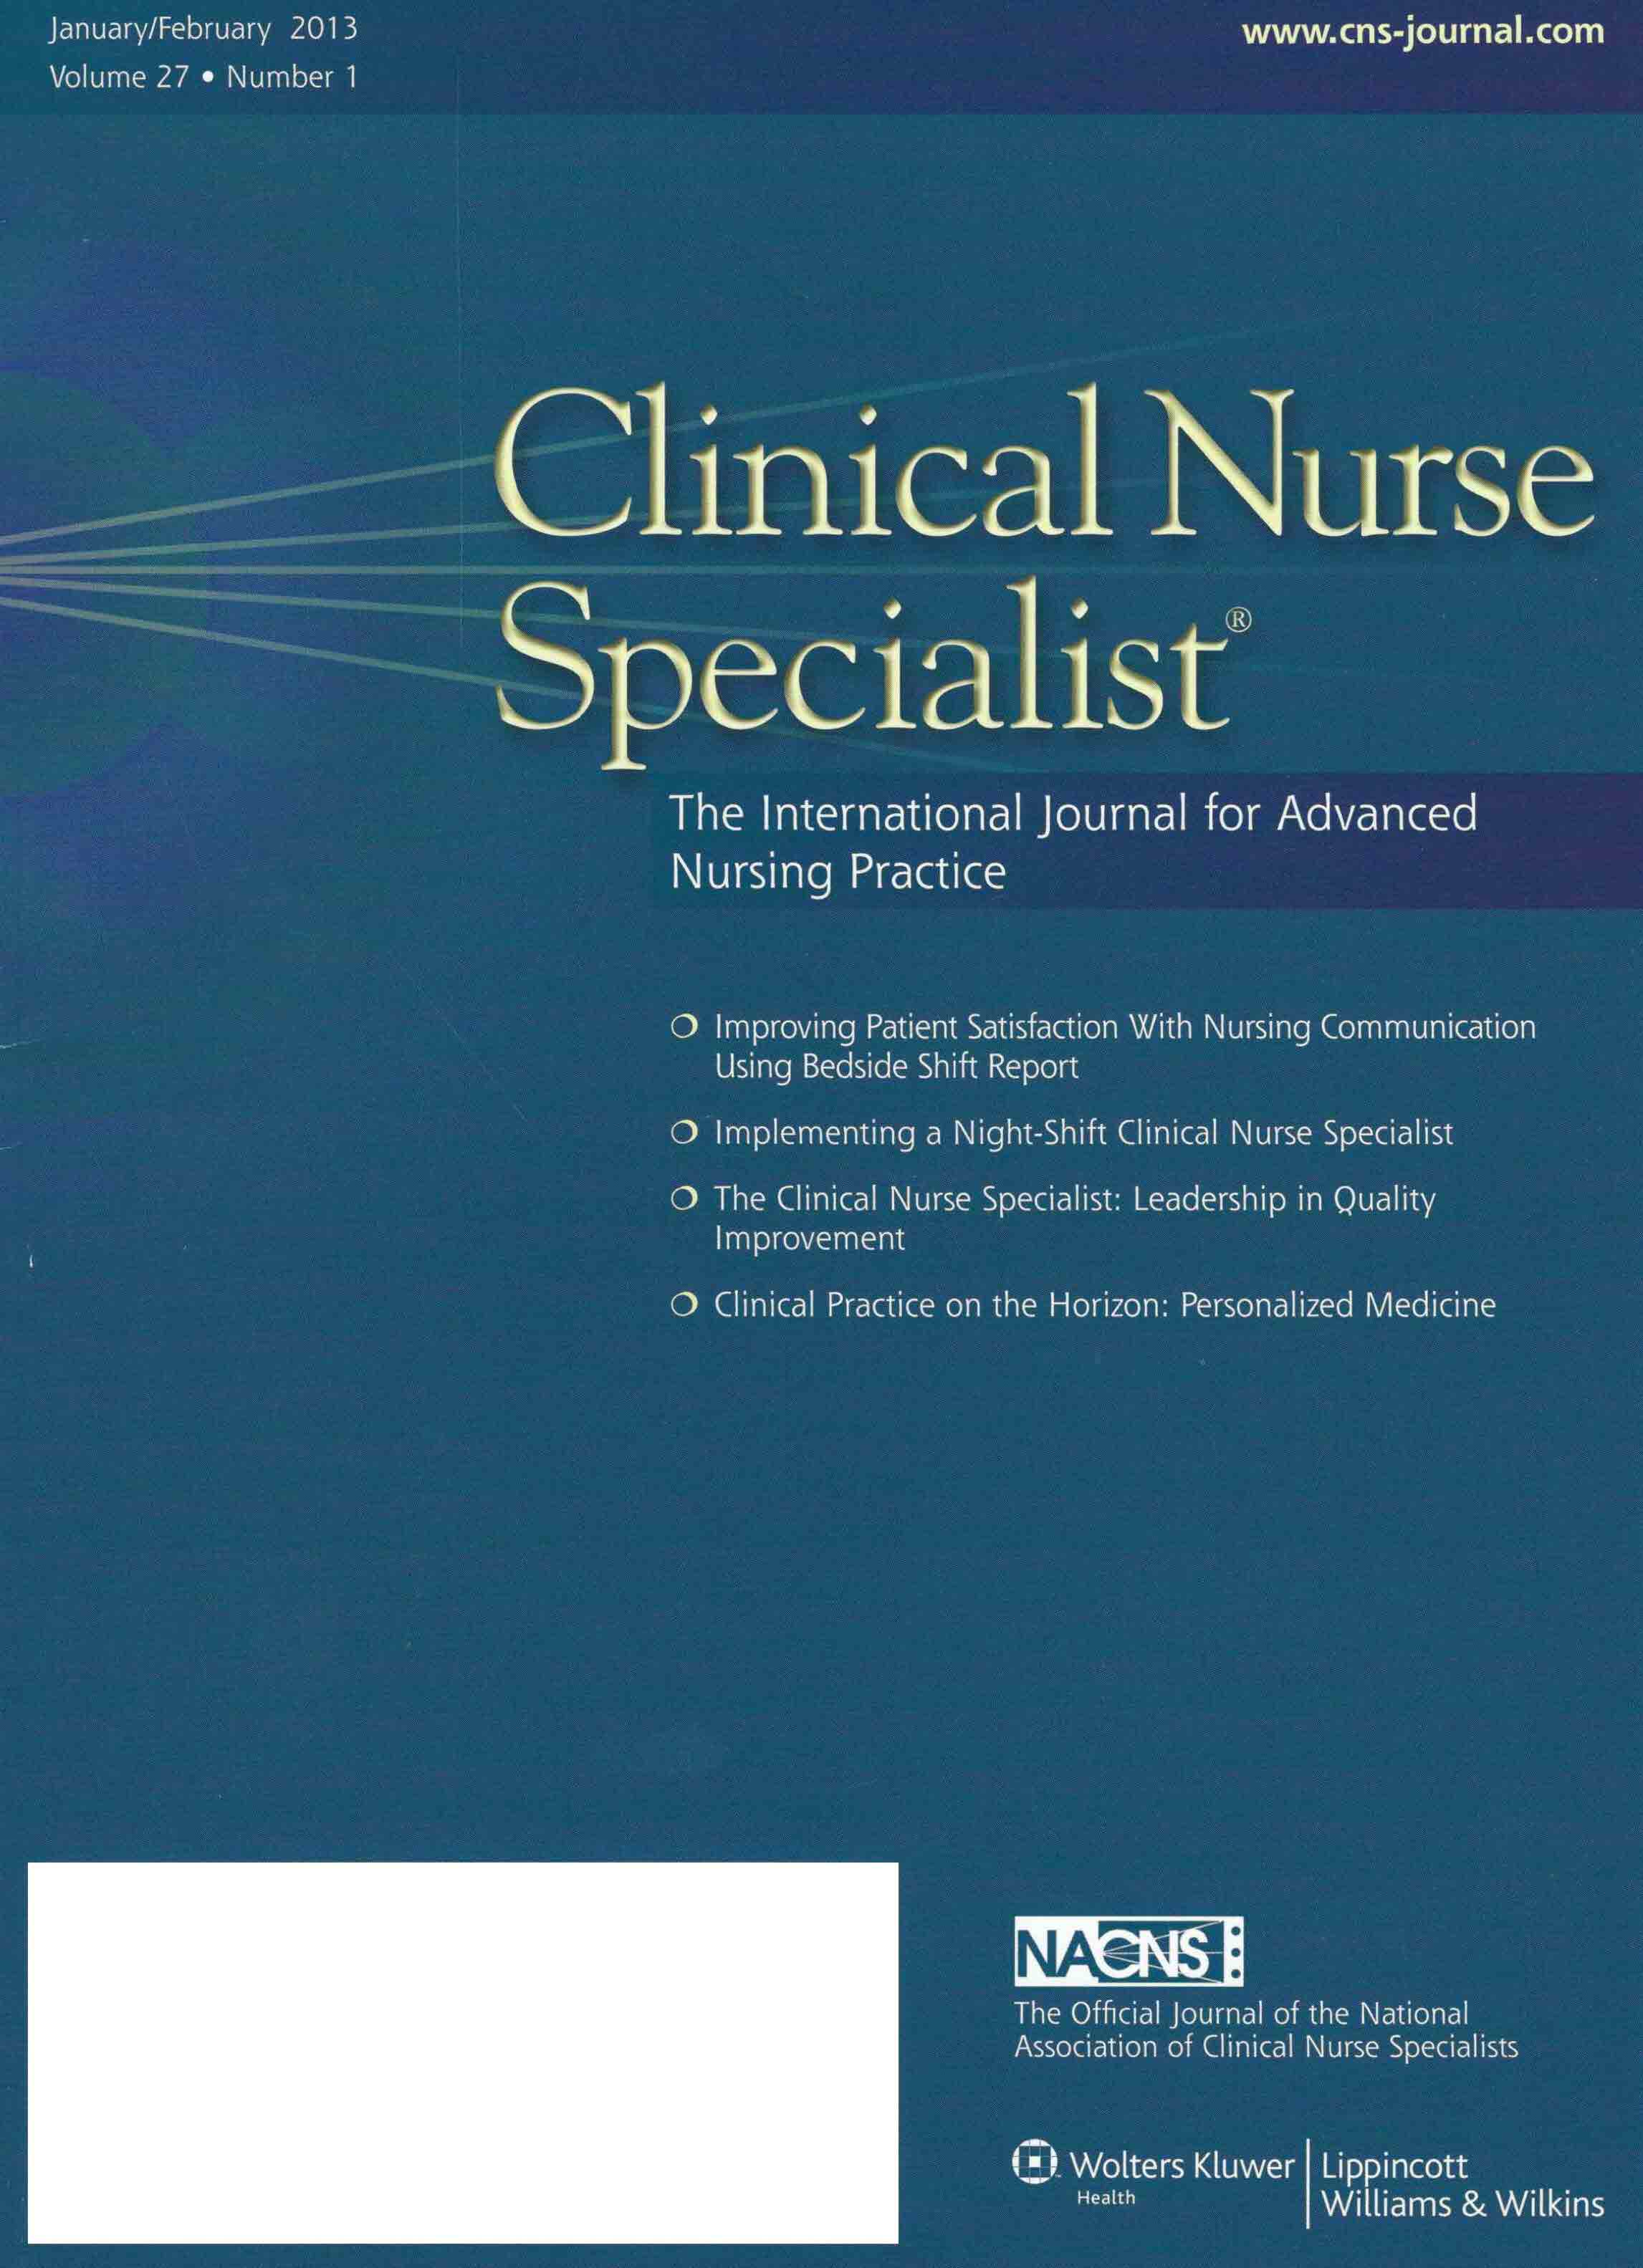 Clinical Nurse